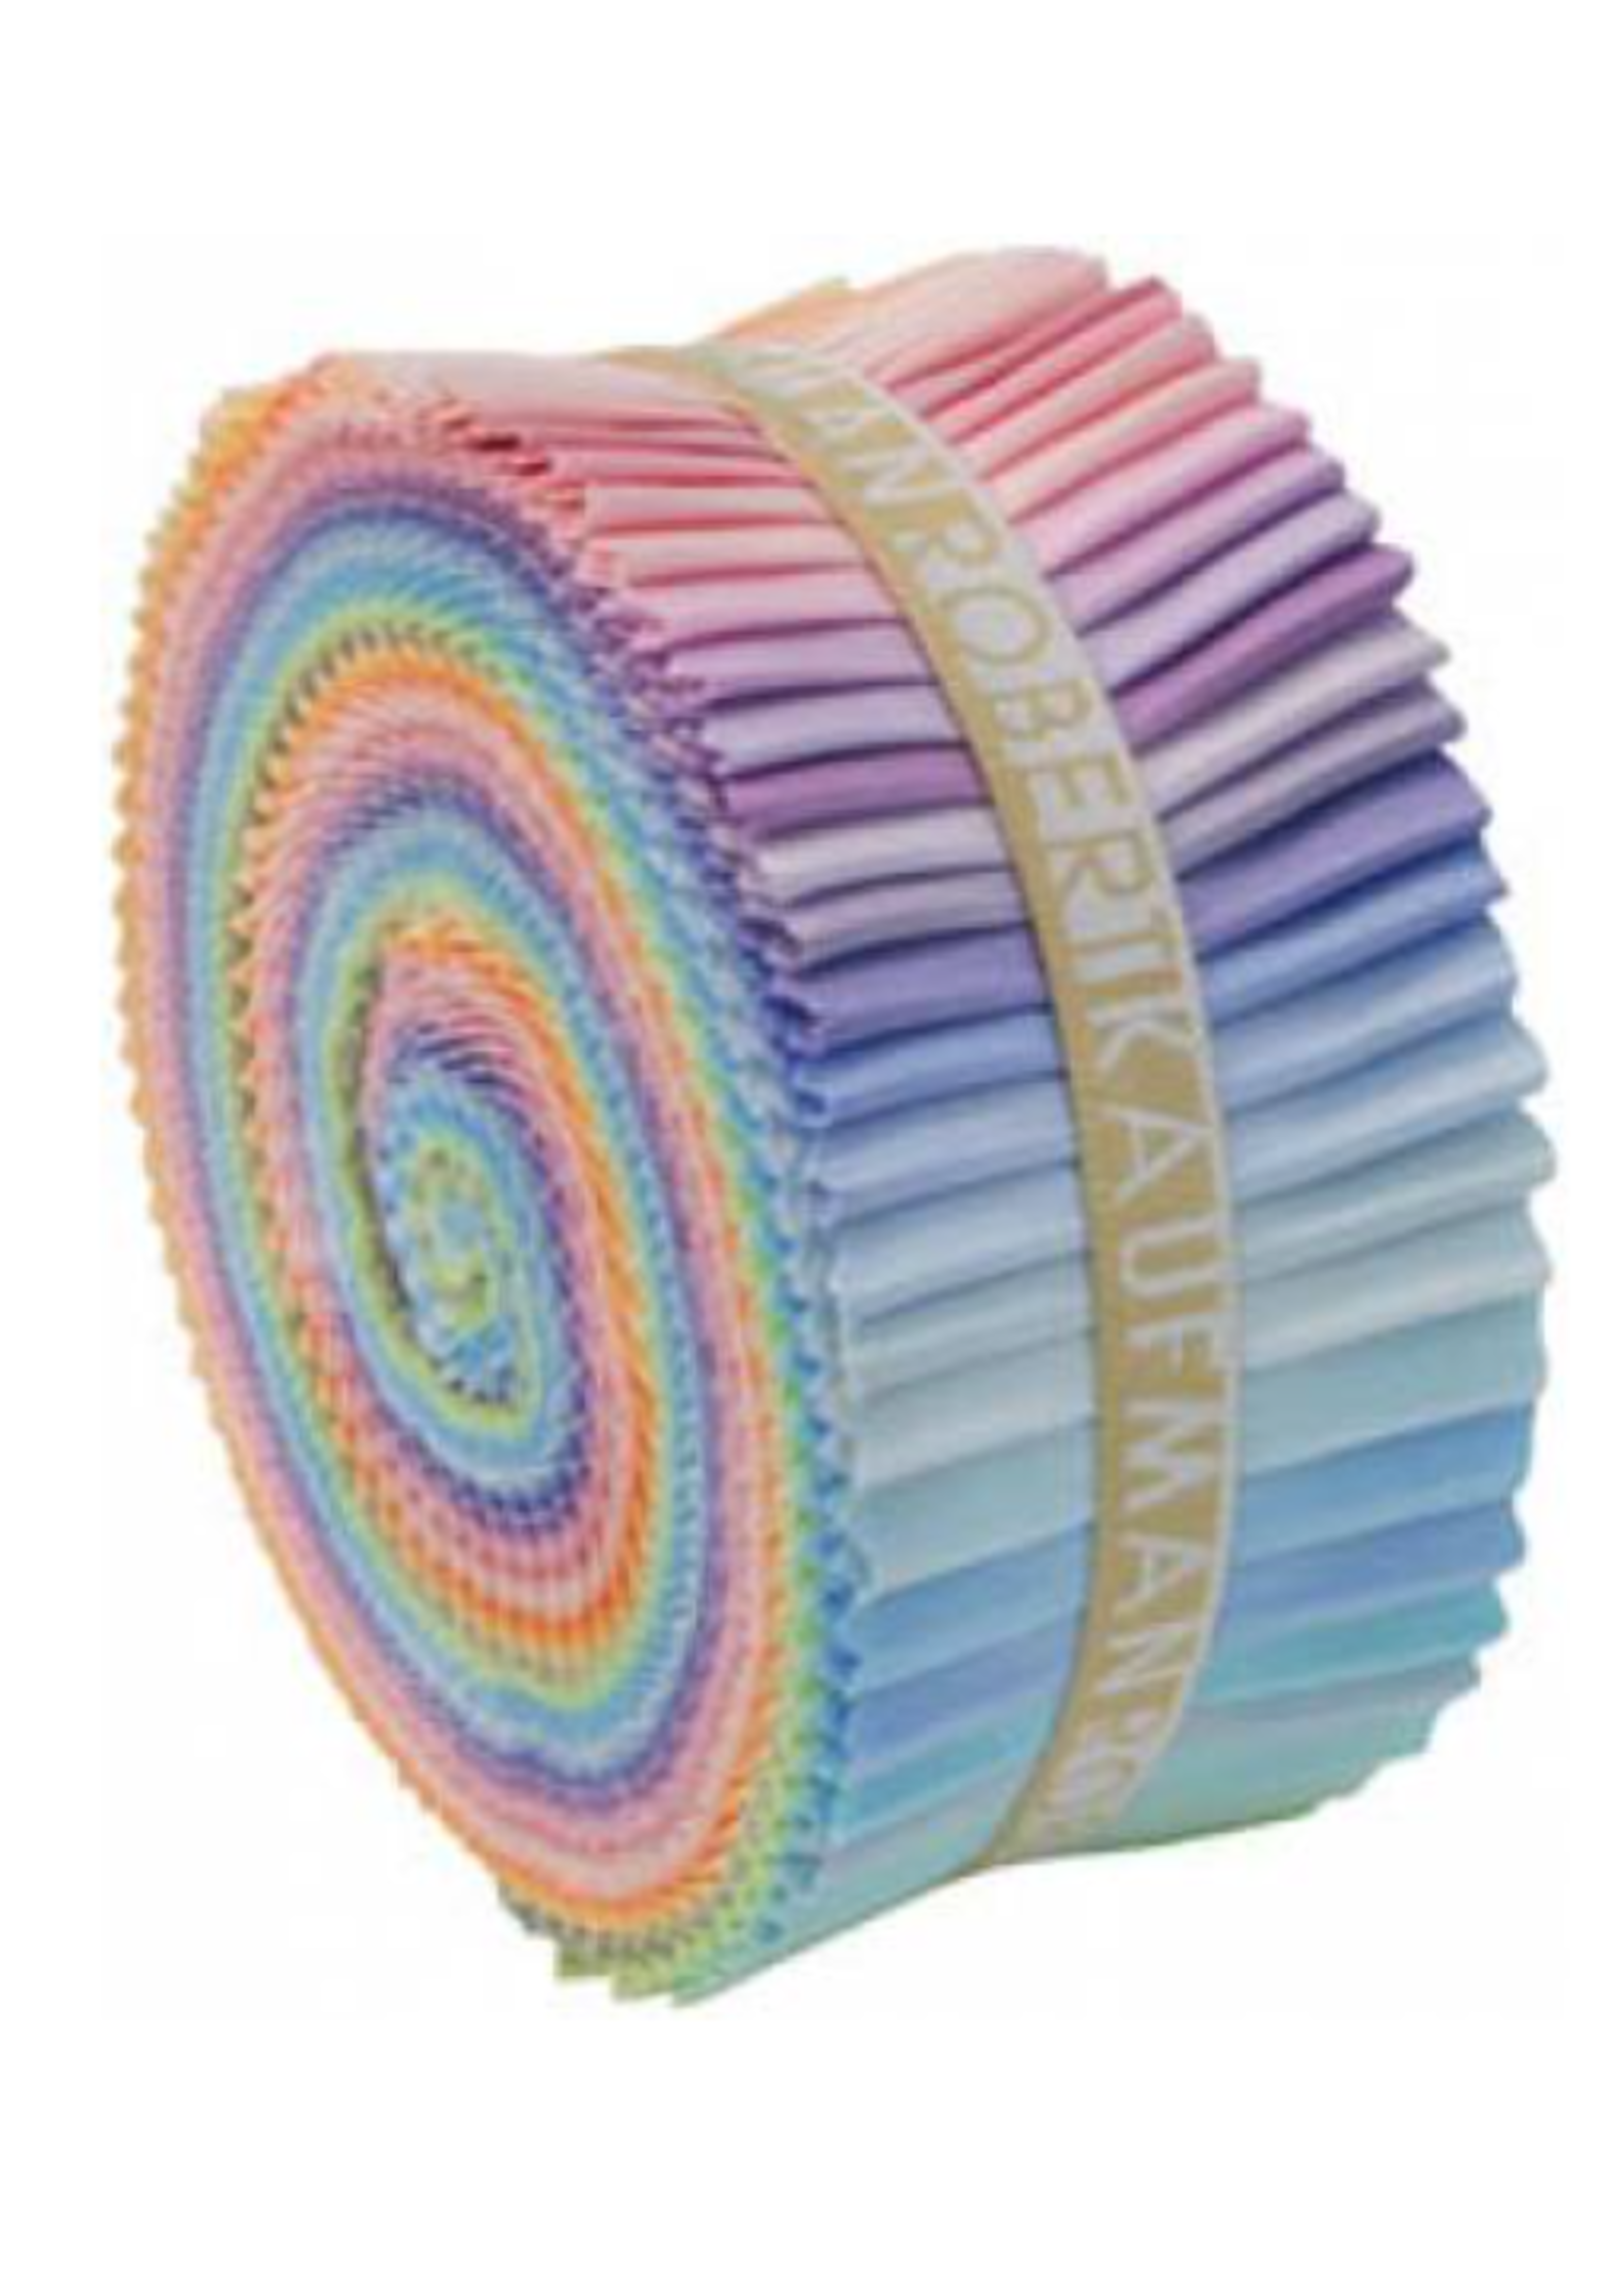 kona 2-1/2in Strips Roll Up Kona Cotton Solids Pastel Palette